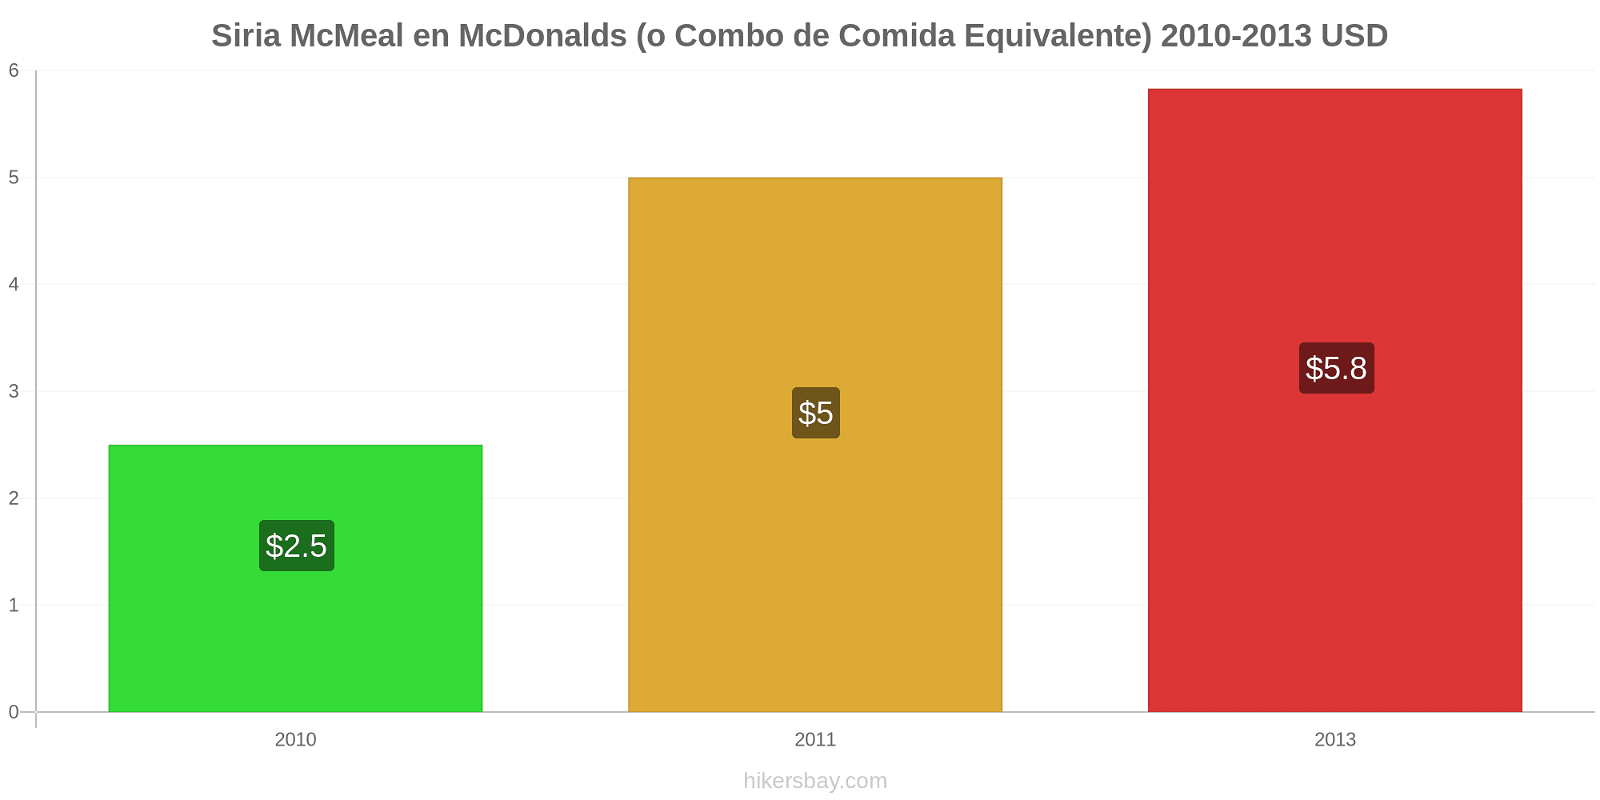 Siria cambios de precios McMeal en McDonalds (o menú equivalente) hikersbay.com